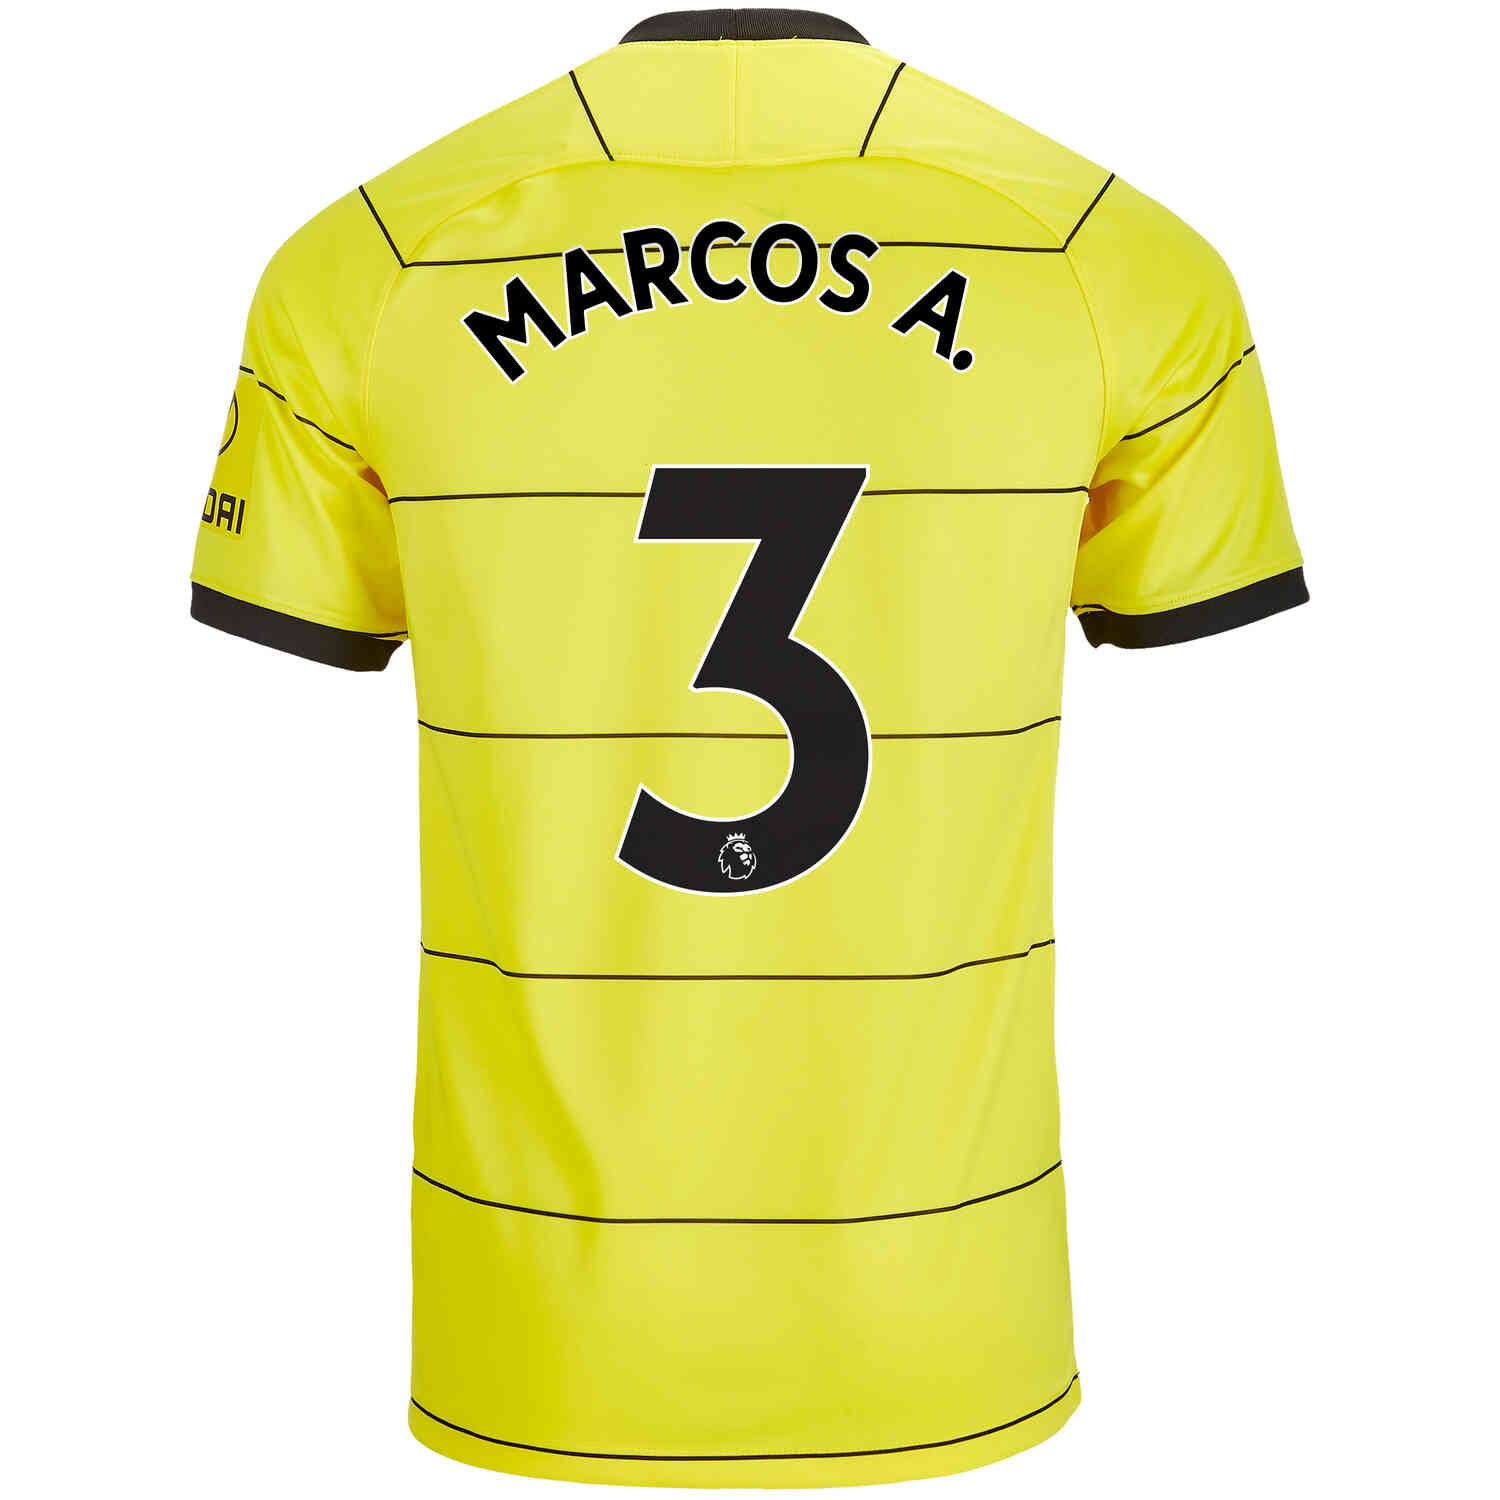 2021/22 Nike Marcos Alonso Chelsea Away Jersey - SoccerPro